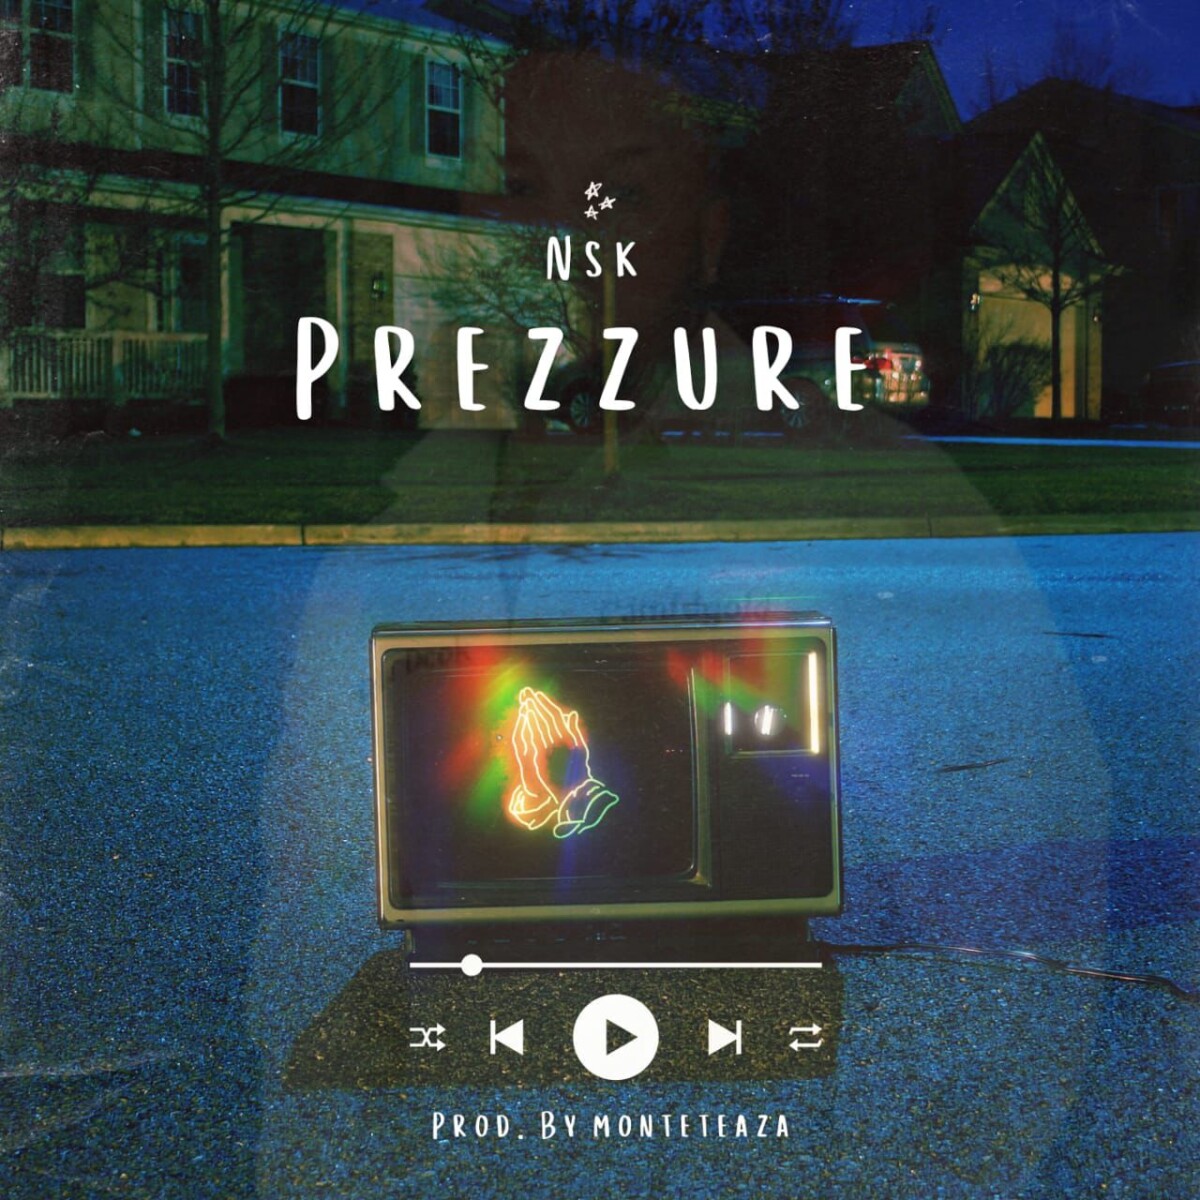 Nsk – Prezzure (Video+Audio)